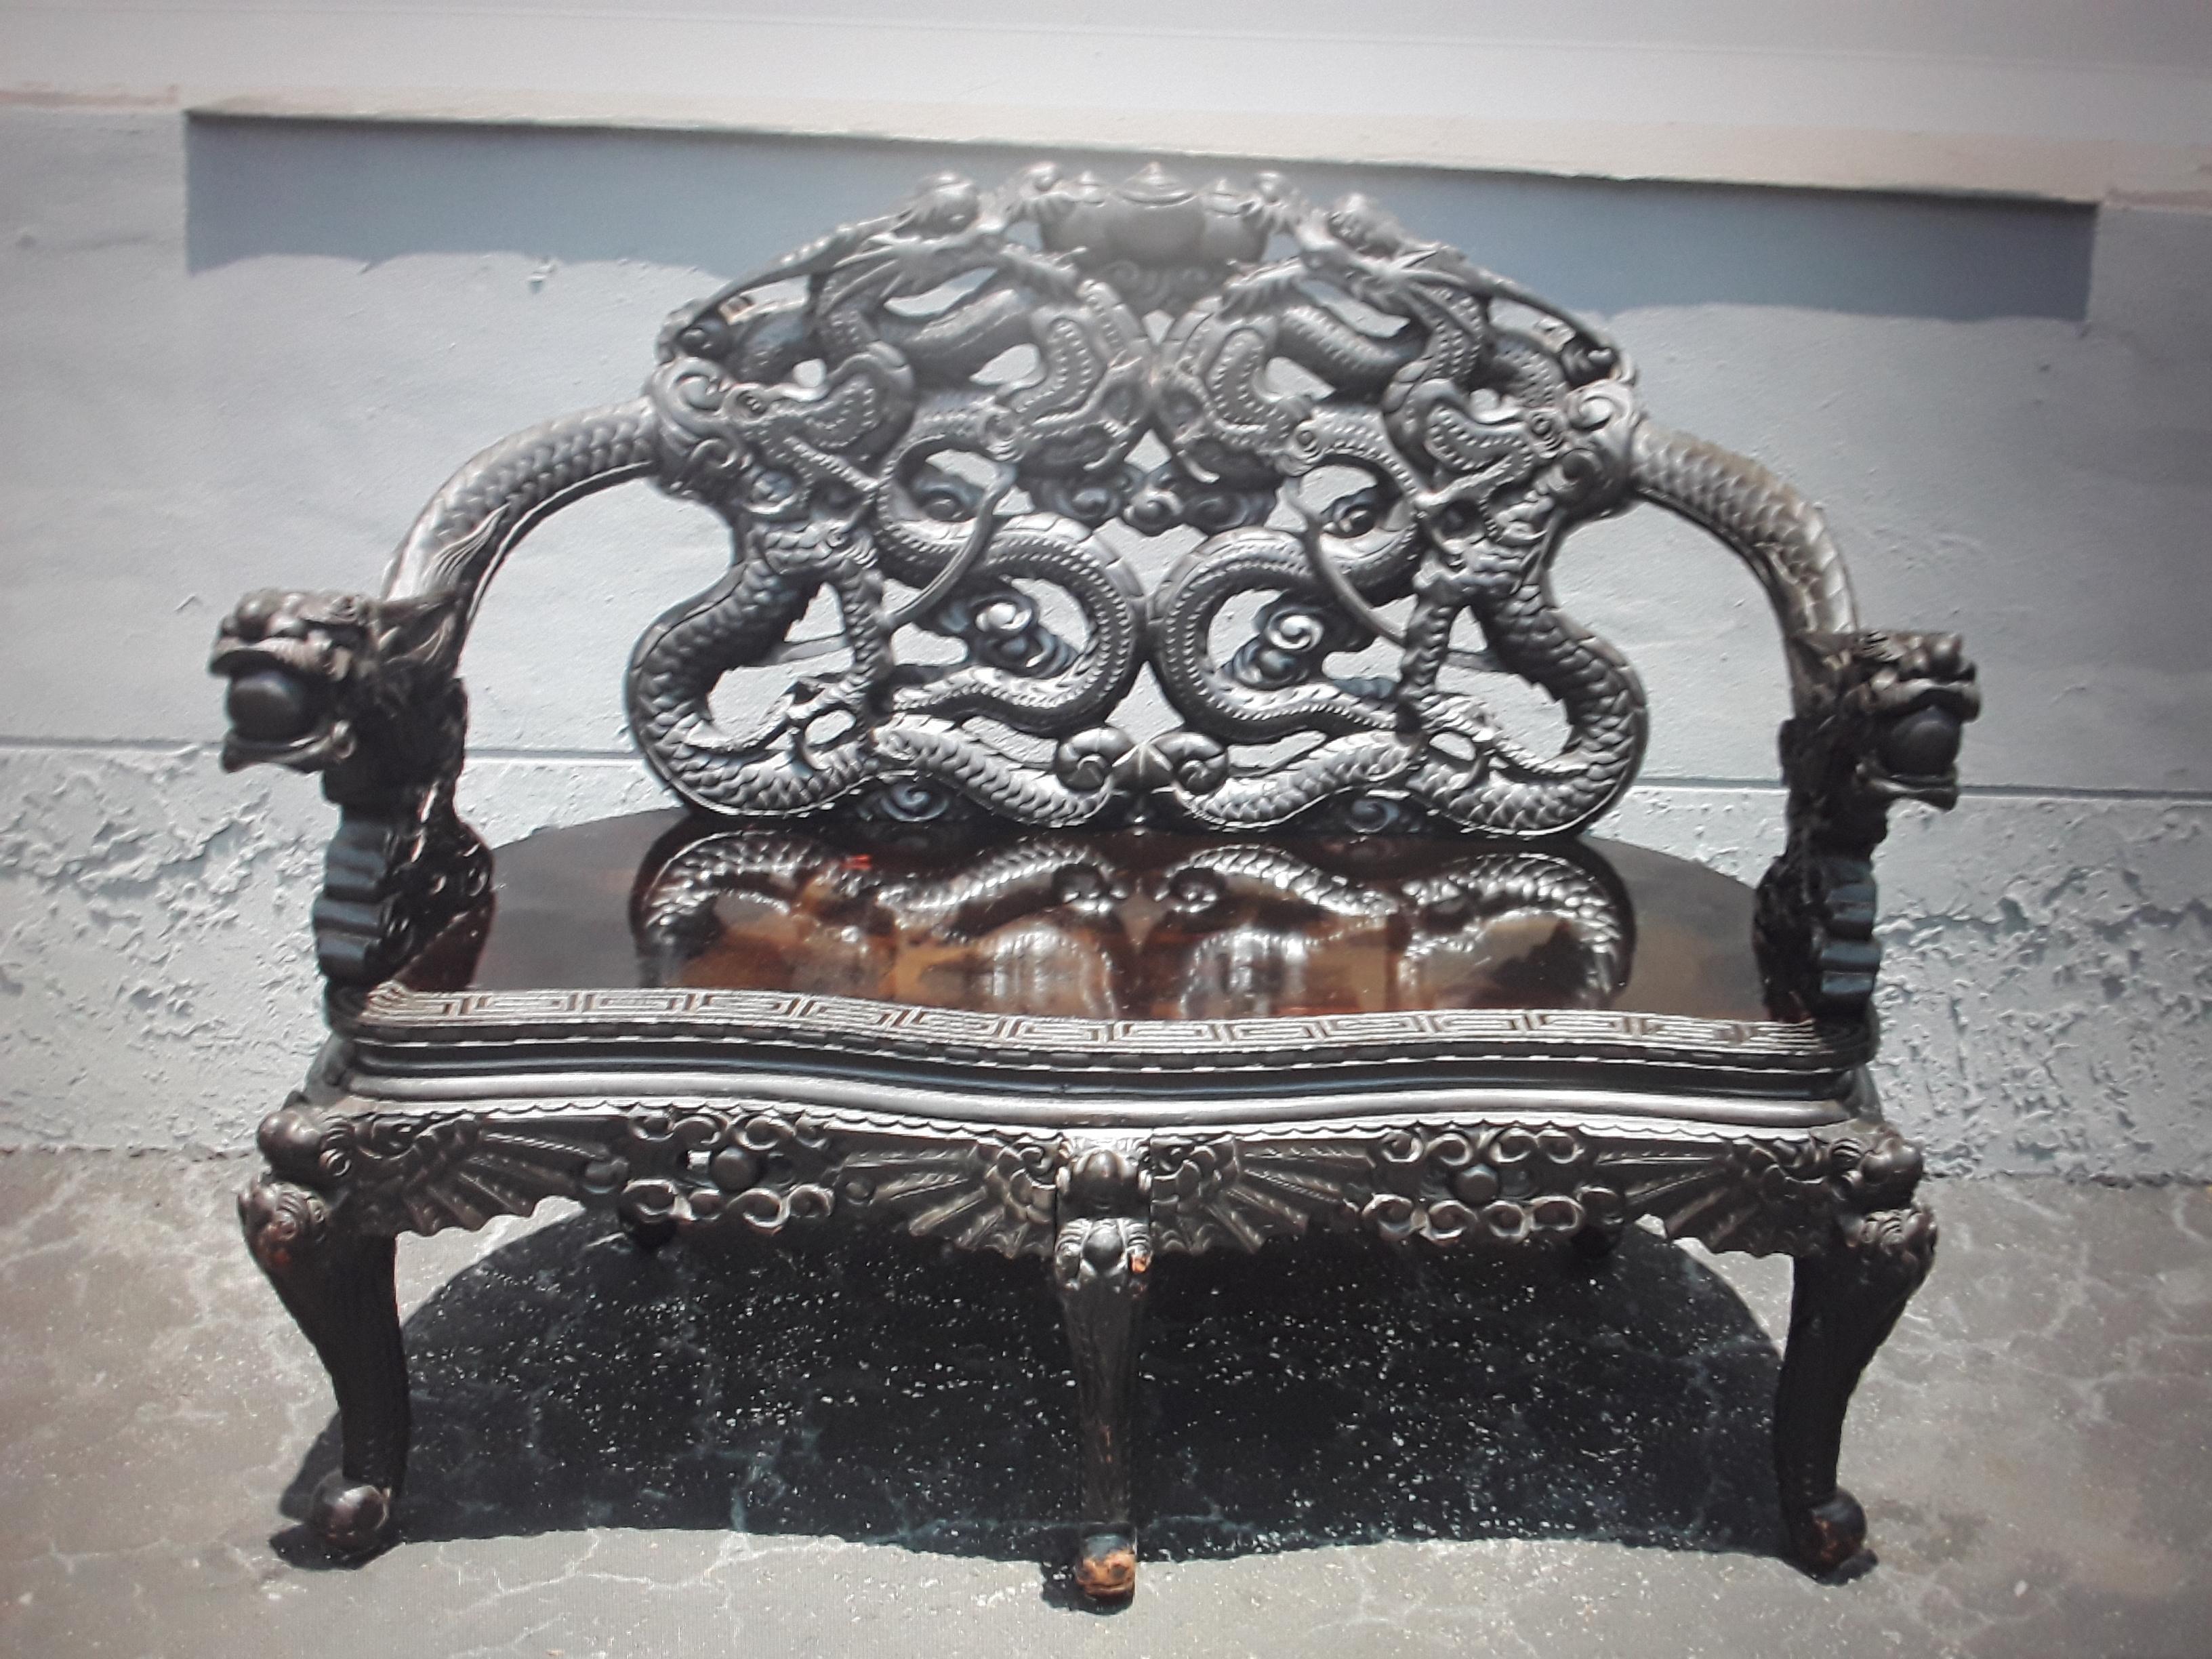 c1940's Chinoiserie/ asiatische geschnitzte und ebonisierte Holz Sitzbank. Erstaunliche Schnitzerei. Bitte schauen Sie sich die Bilder genau an, da sie die Details der Schnitzereien zeigen.